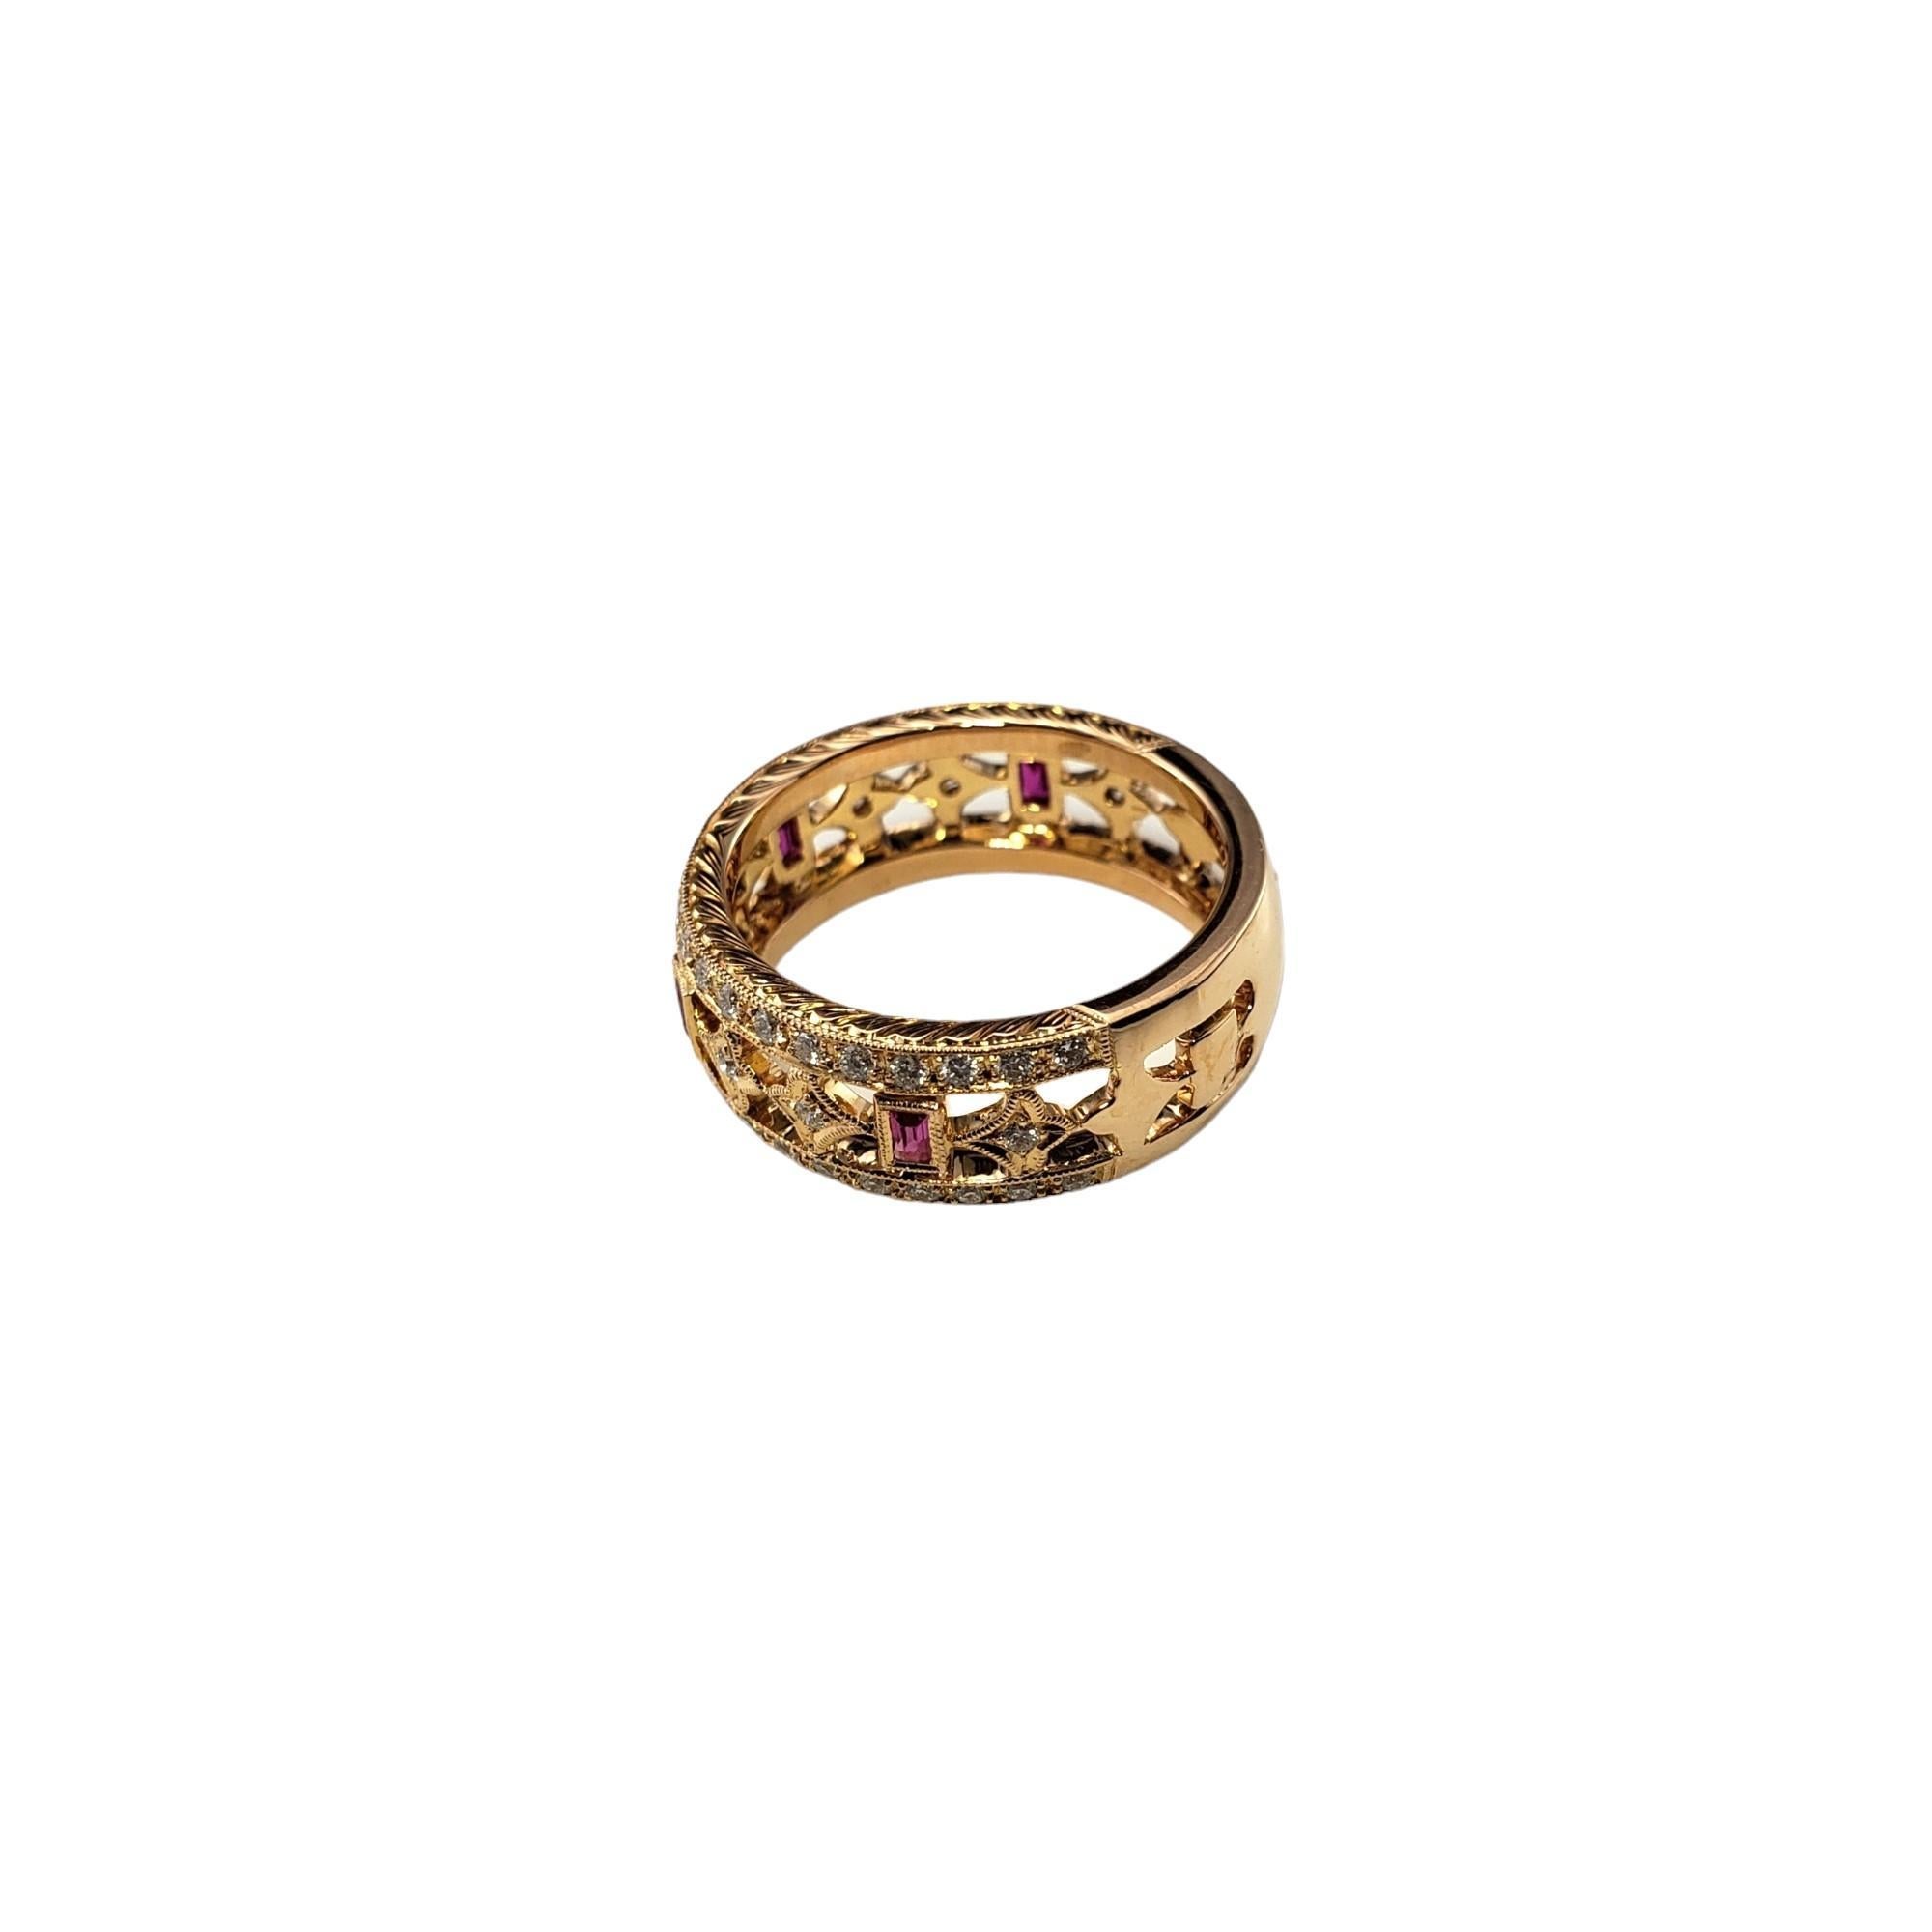 Vintage 18 Karat Pink Sapphire and Diamond Ring Size 6.25 JAGi Certified-

Cet élégant bracelet présente quatre saphirs roses naturels de taille émeraude et 58 diamants ronds de taille brillant, sertis dans de l'or jaune 18 carats magnifiquement